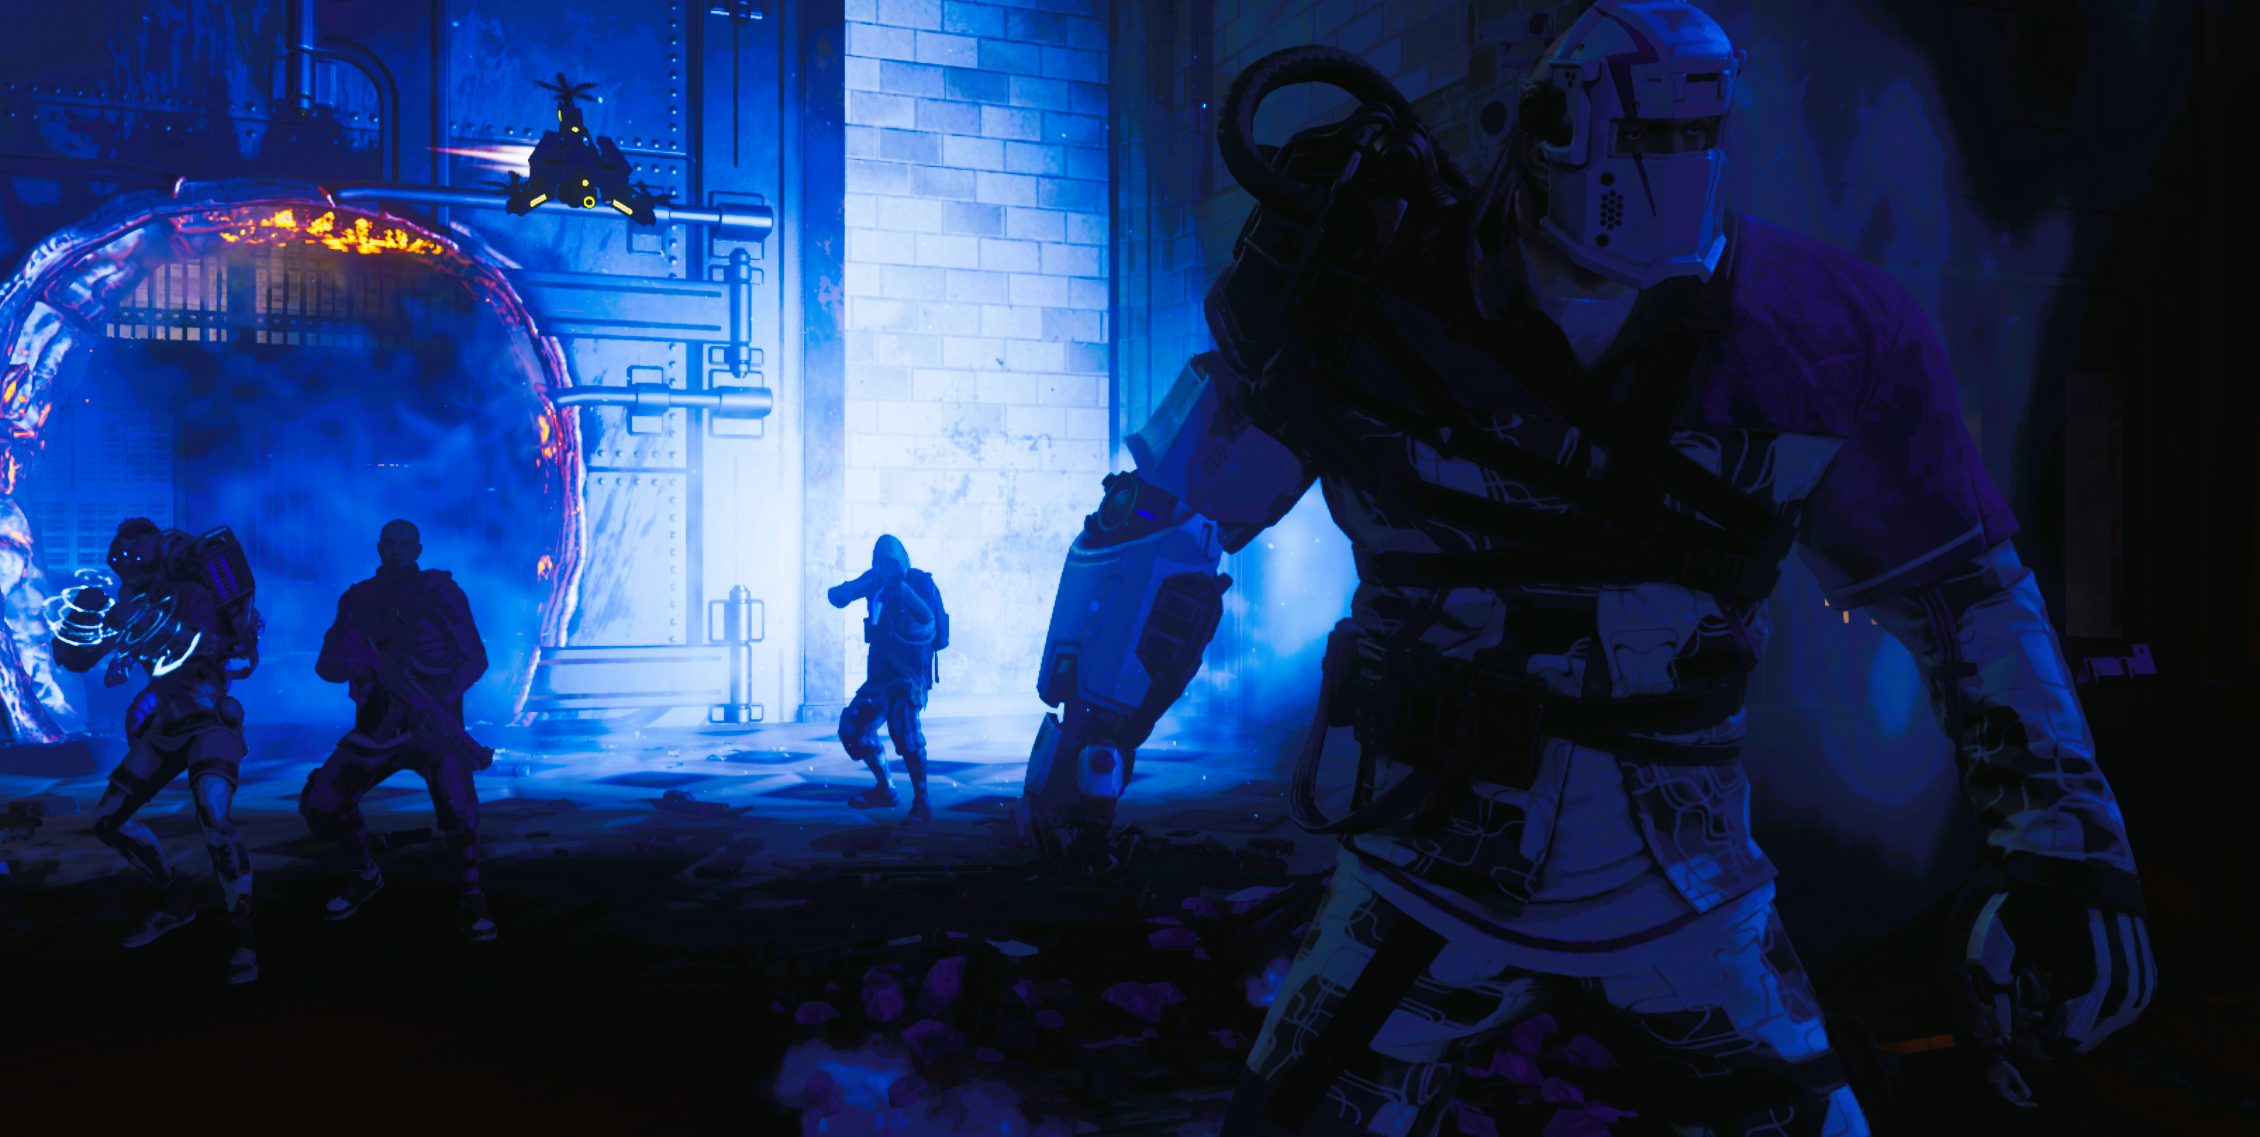 Gotham Knights gameplay analysis: Examining combat, crafting, and traversal